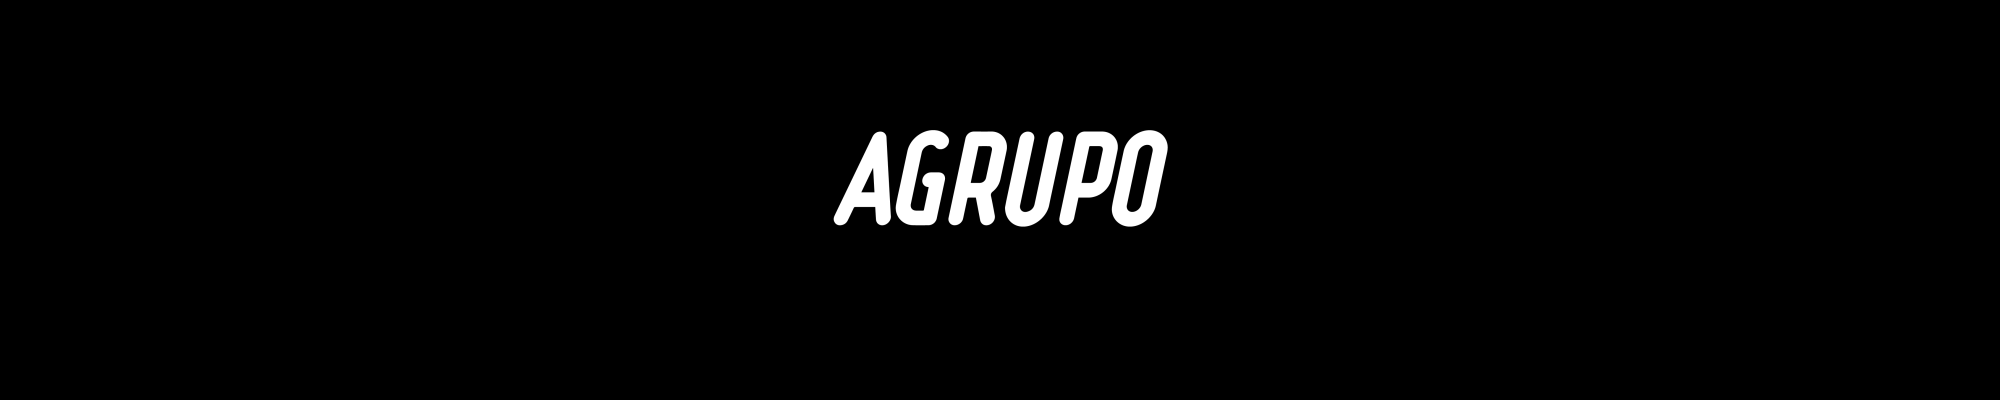 Logotipo de Agrupo